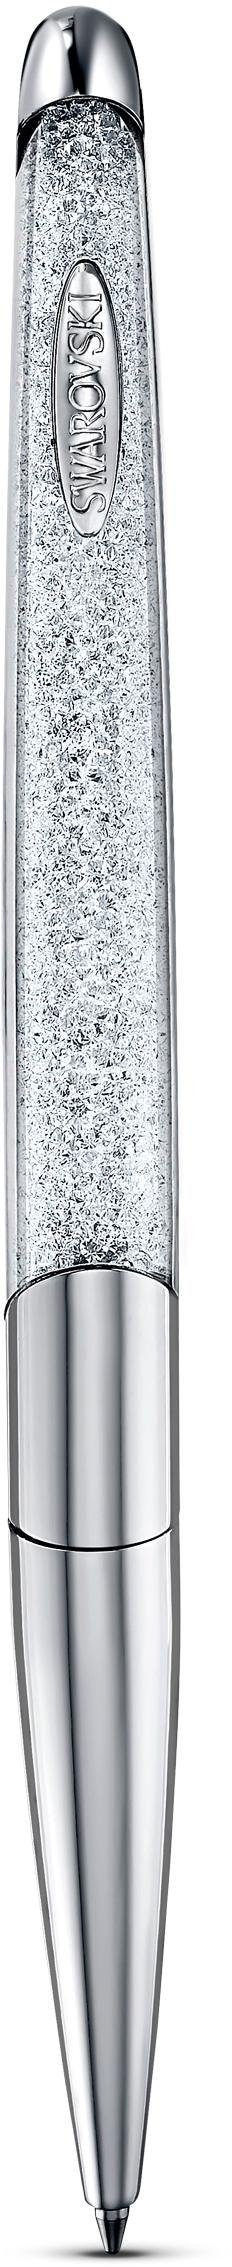 Swarovski Kugelschreiber »Crystalline Nova, weiß, verchromt, 5534324«, mit  Swarovski® Kristallen | BAUR